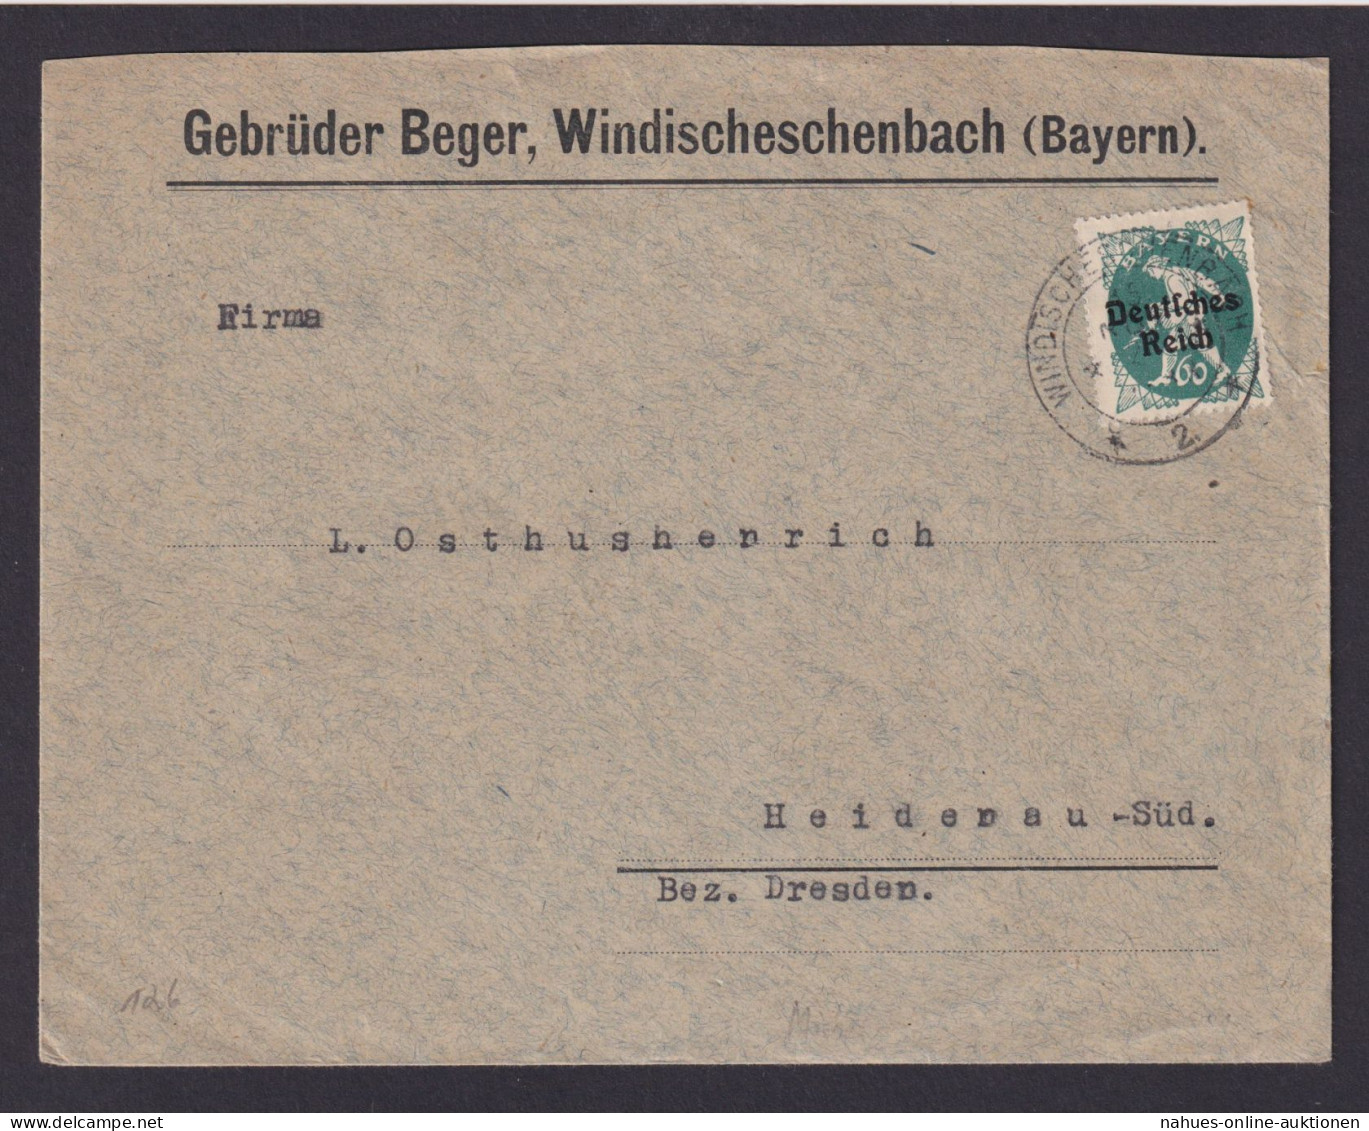 Deutsches Reich Windischeschenbach Bayern Geb. Berger Brief EF Bayern Abschied - Briefe U. Dokumente